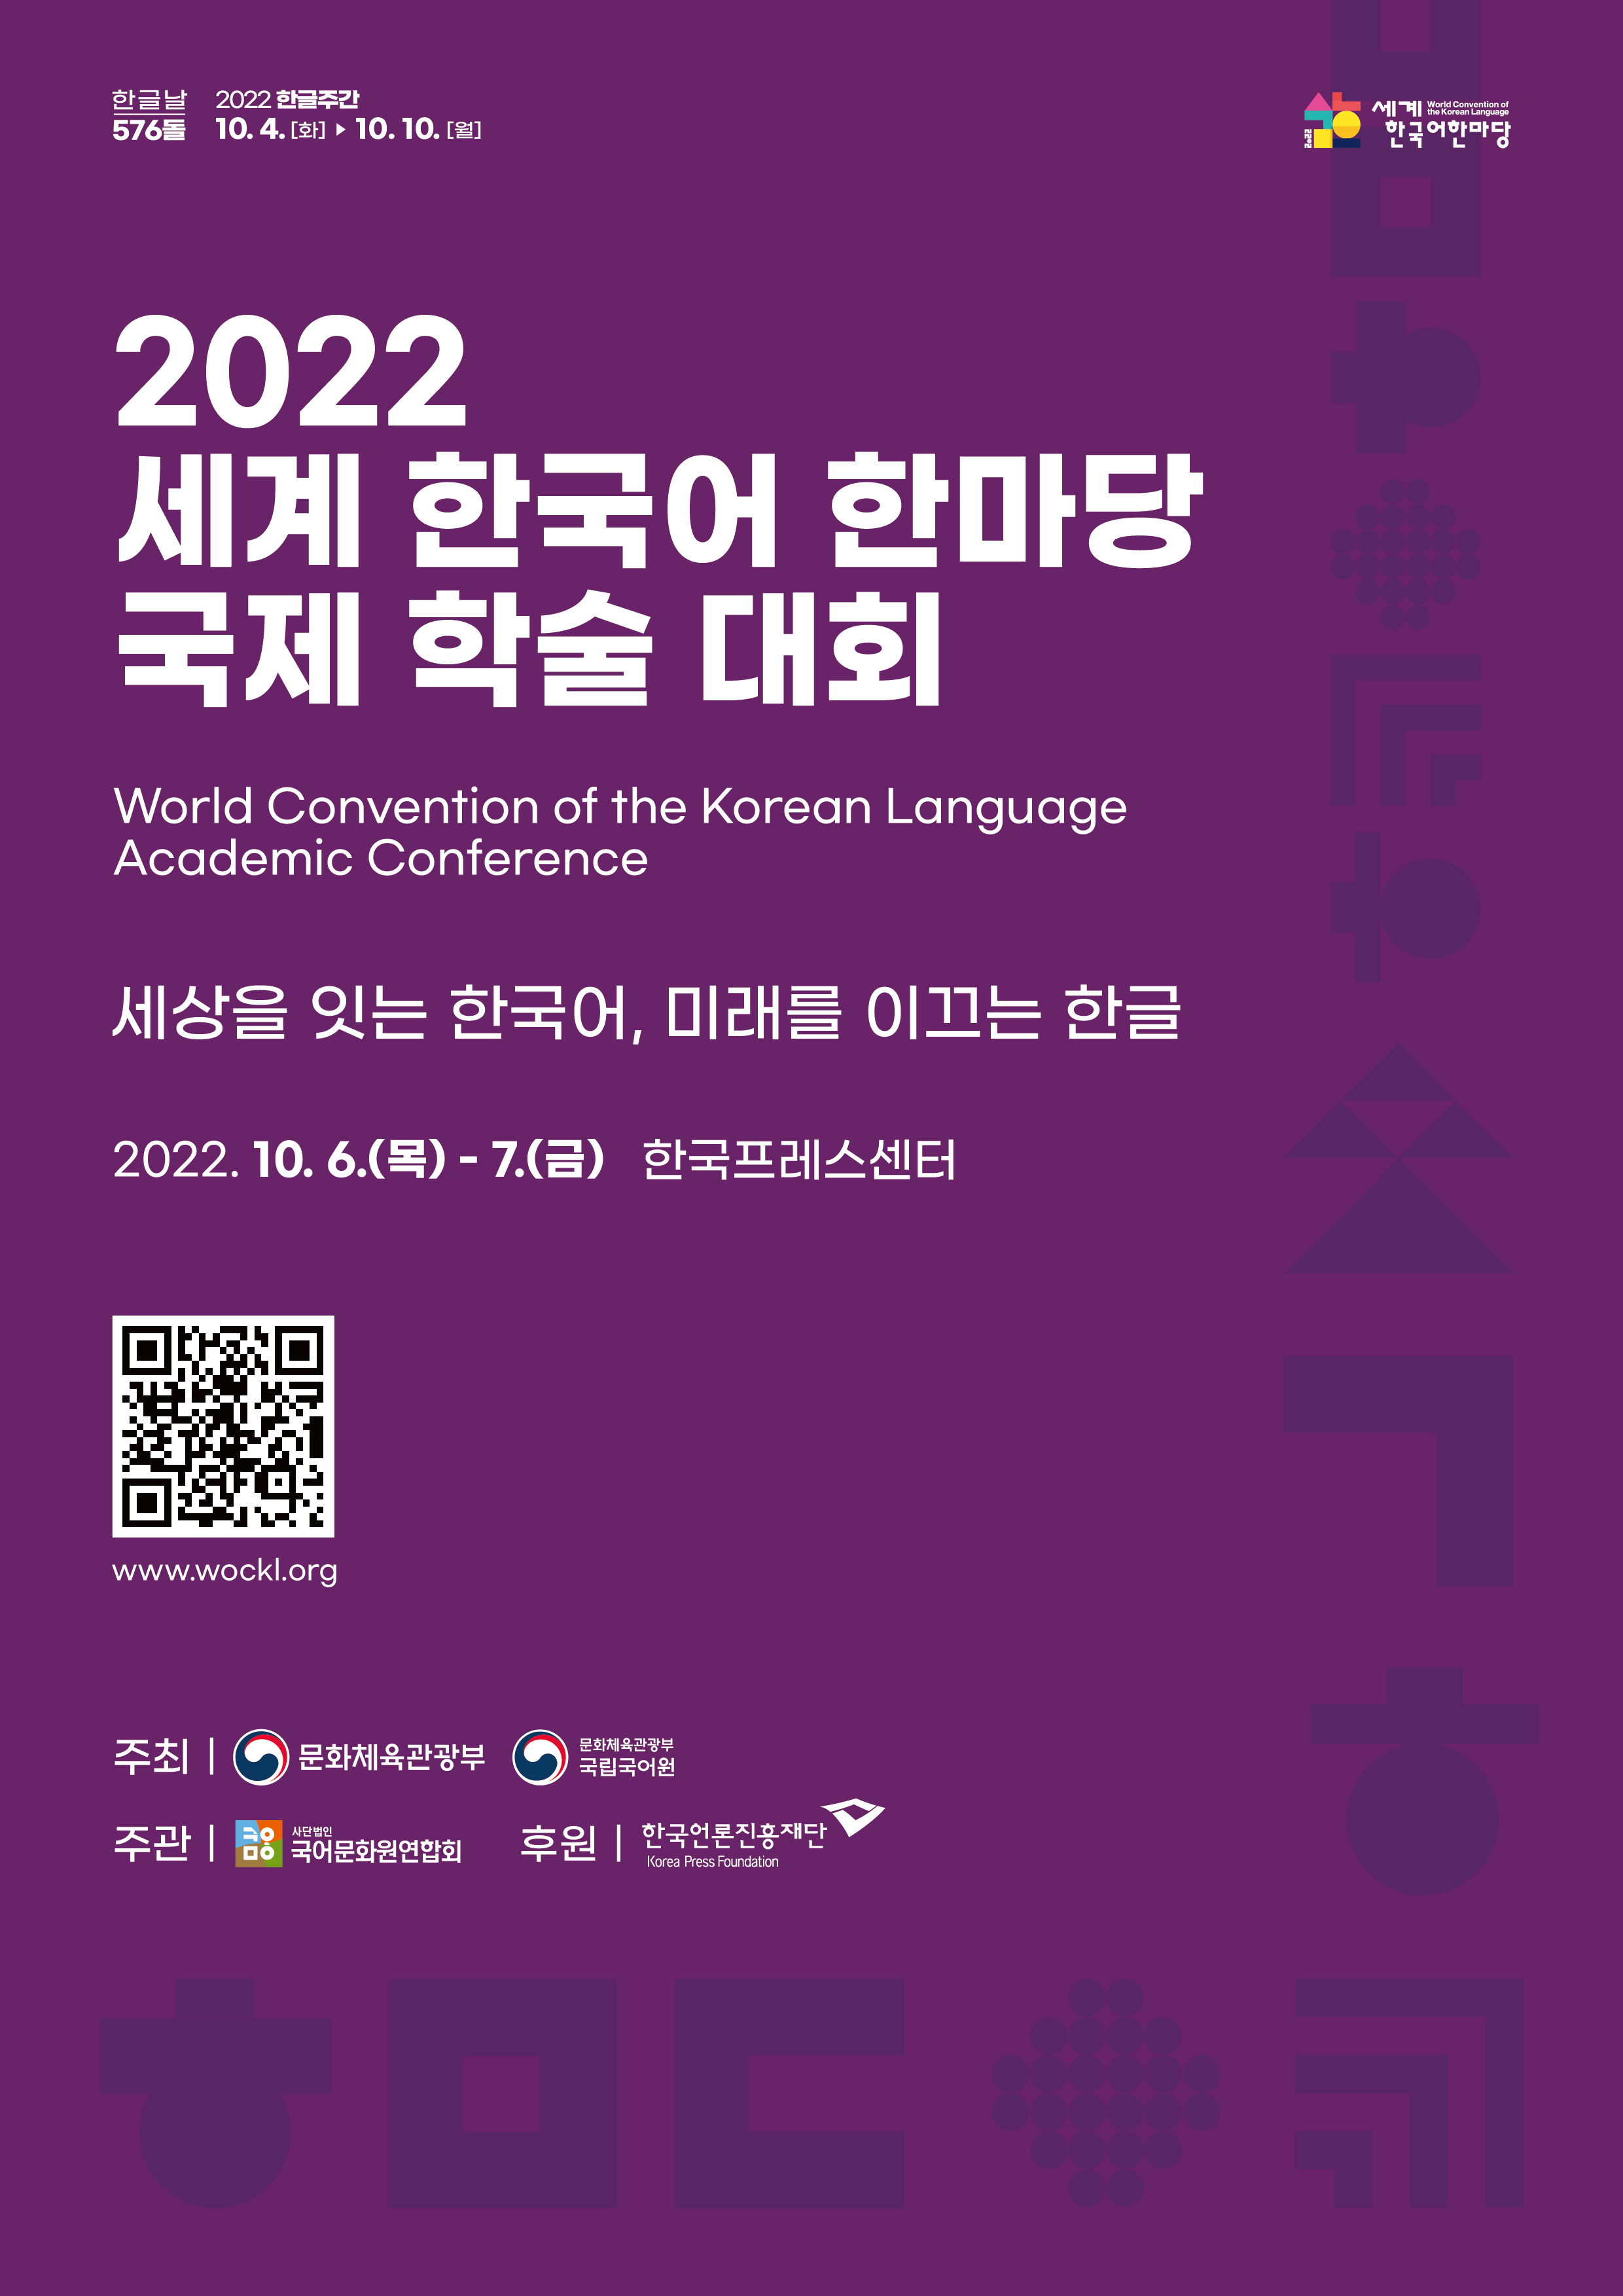 한글날 567돌 2022 한글주간 10.4.(화)-10.10.(월), 세계한국어한마당, 2022 세계 한국어 한마당 국제 학술 대회, World Convention of the Korean Language Academic Conference, 세상을 잇는 한국어 미래를 이끄는 한글, 2022.10.6.(목)-7.(금) 한국프레스센터, 정보무늬 www.wockl.org, 주최: 문화체육관광부, 문화체육관광부 국립국어원, 주관: 사단법인 국어문화원연합회, 후원: 한국언론진흥재단